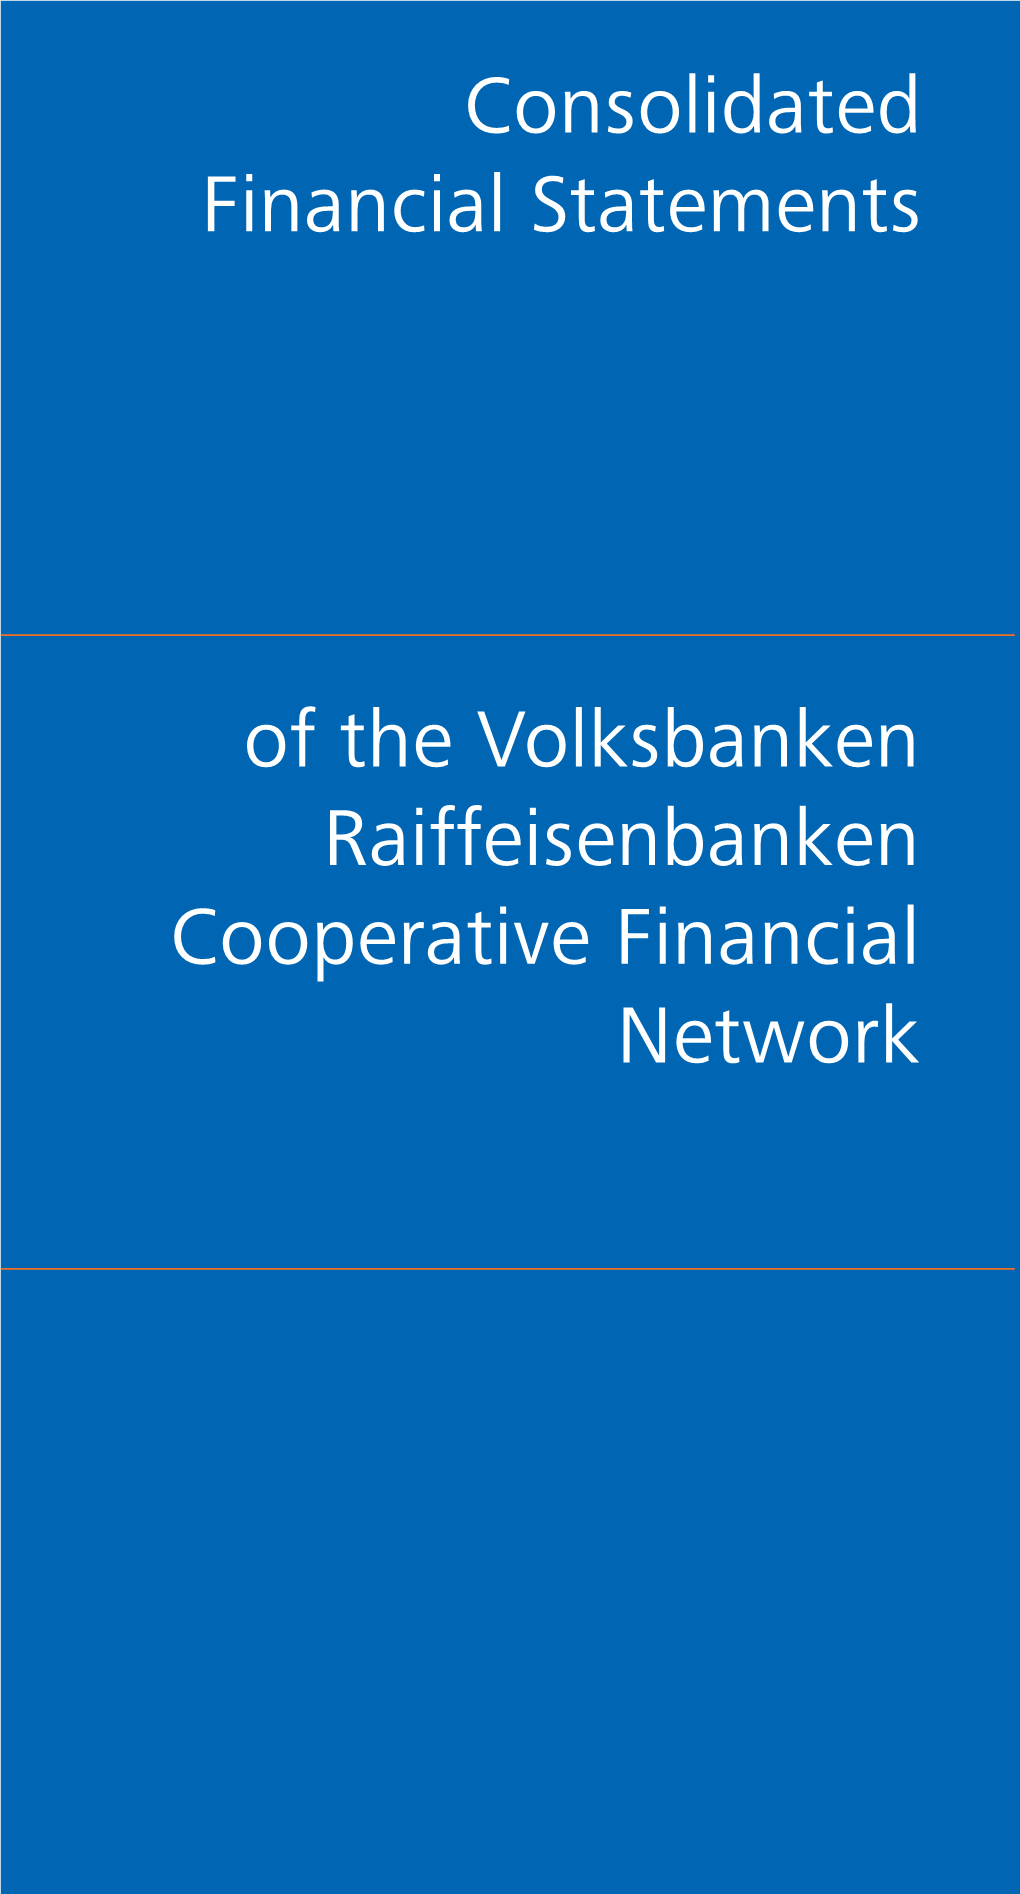 Of the Volksbanken Raiffeisenbanken Cooperative Financial Network